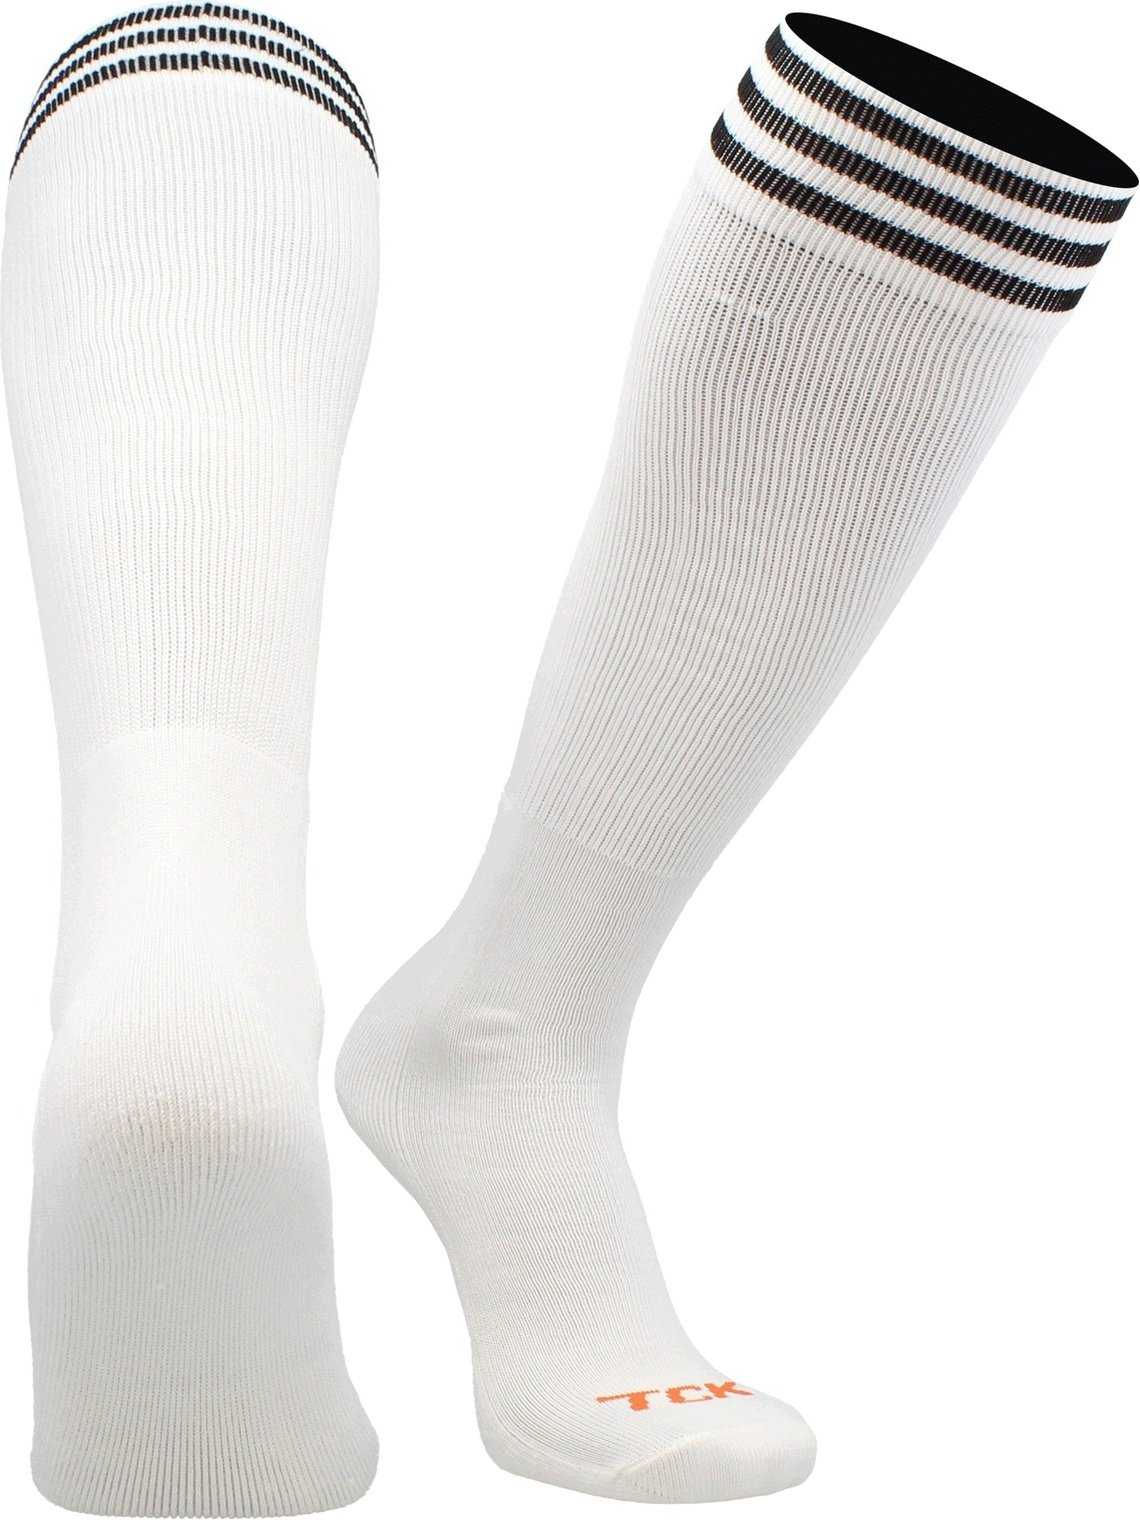 TCK Prosport Striped Knee High Tube Socks - White Black - HIT a Double